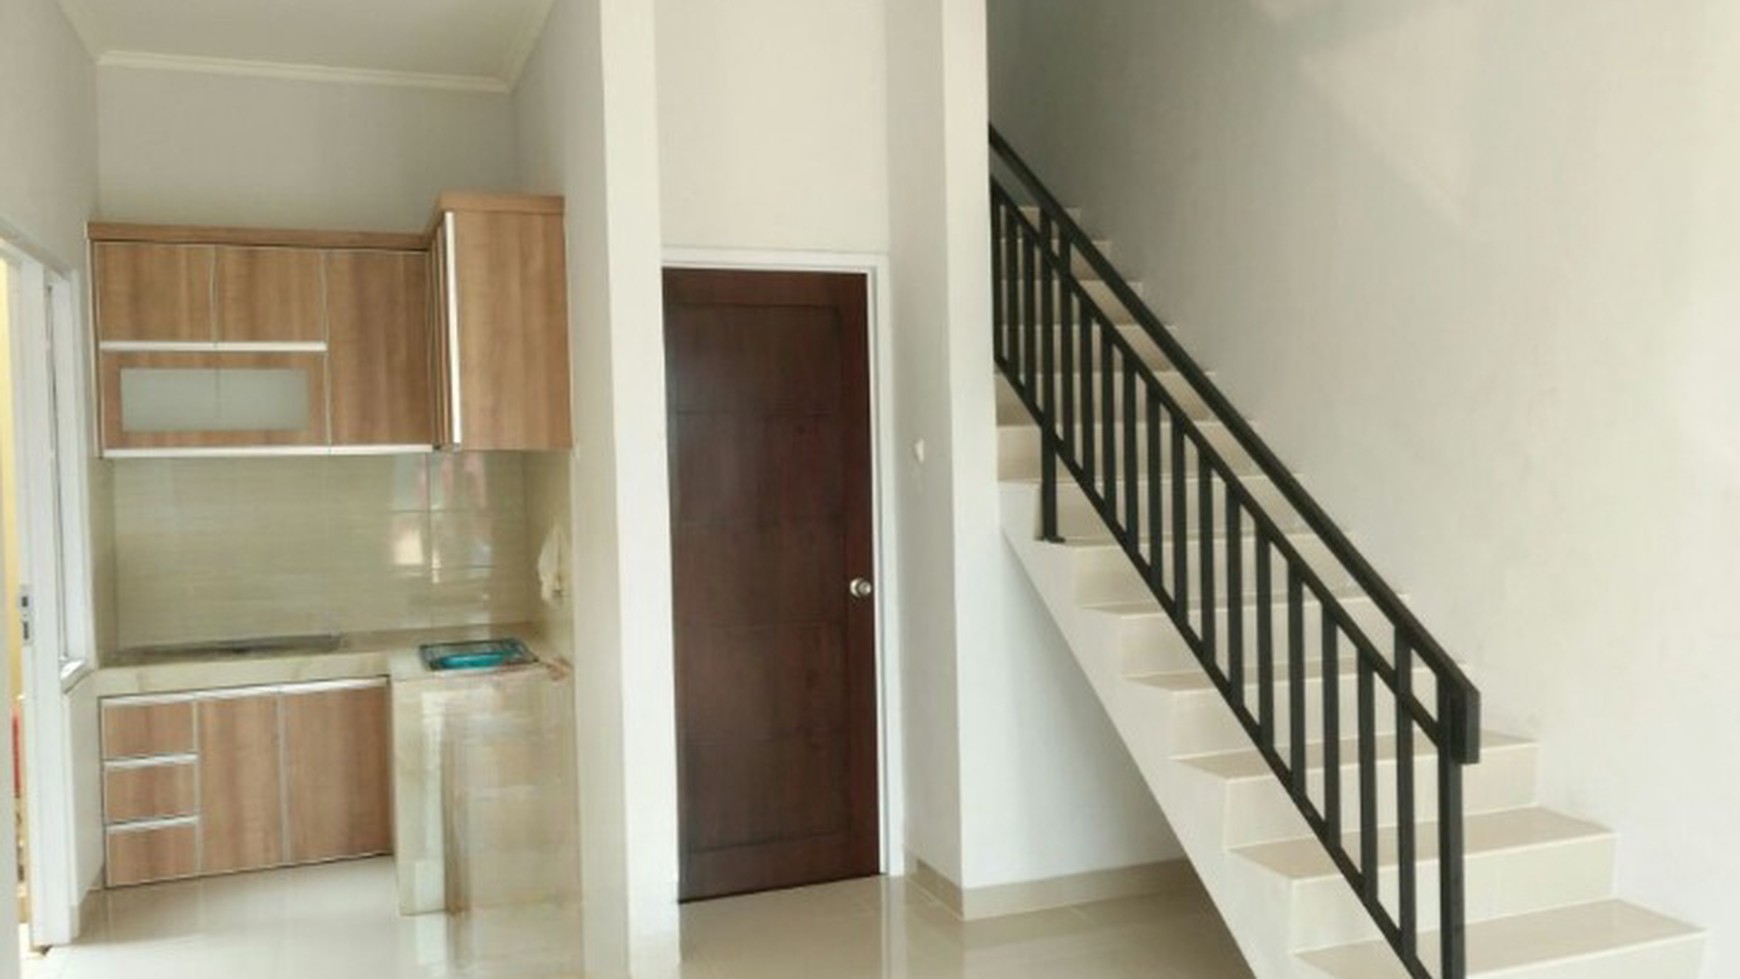 Rumah Brand New, Bagus, Lokasi strategis di Bintaro